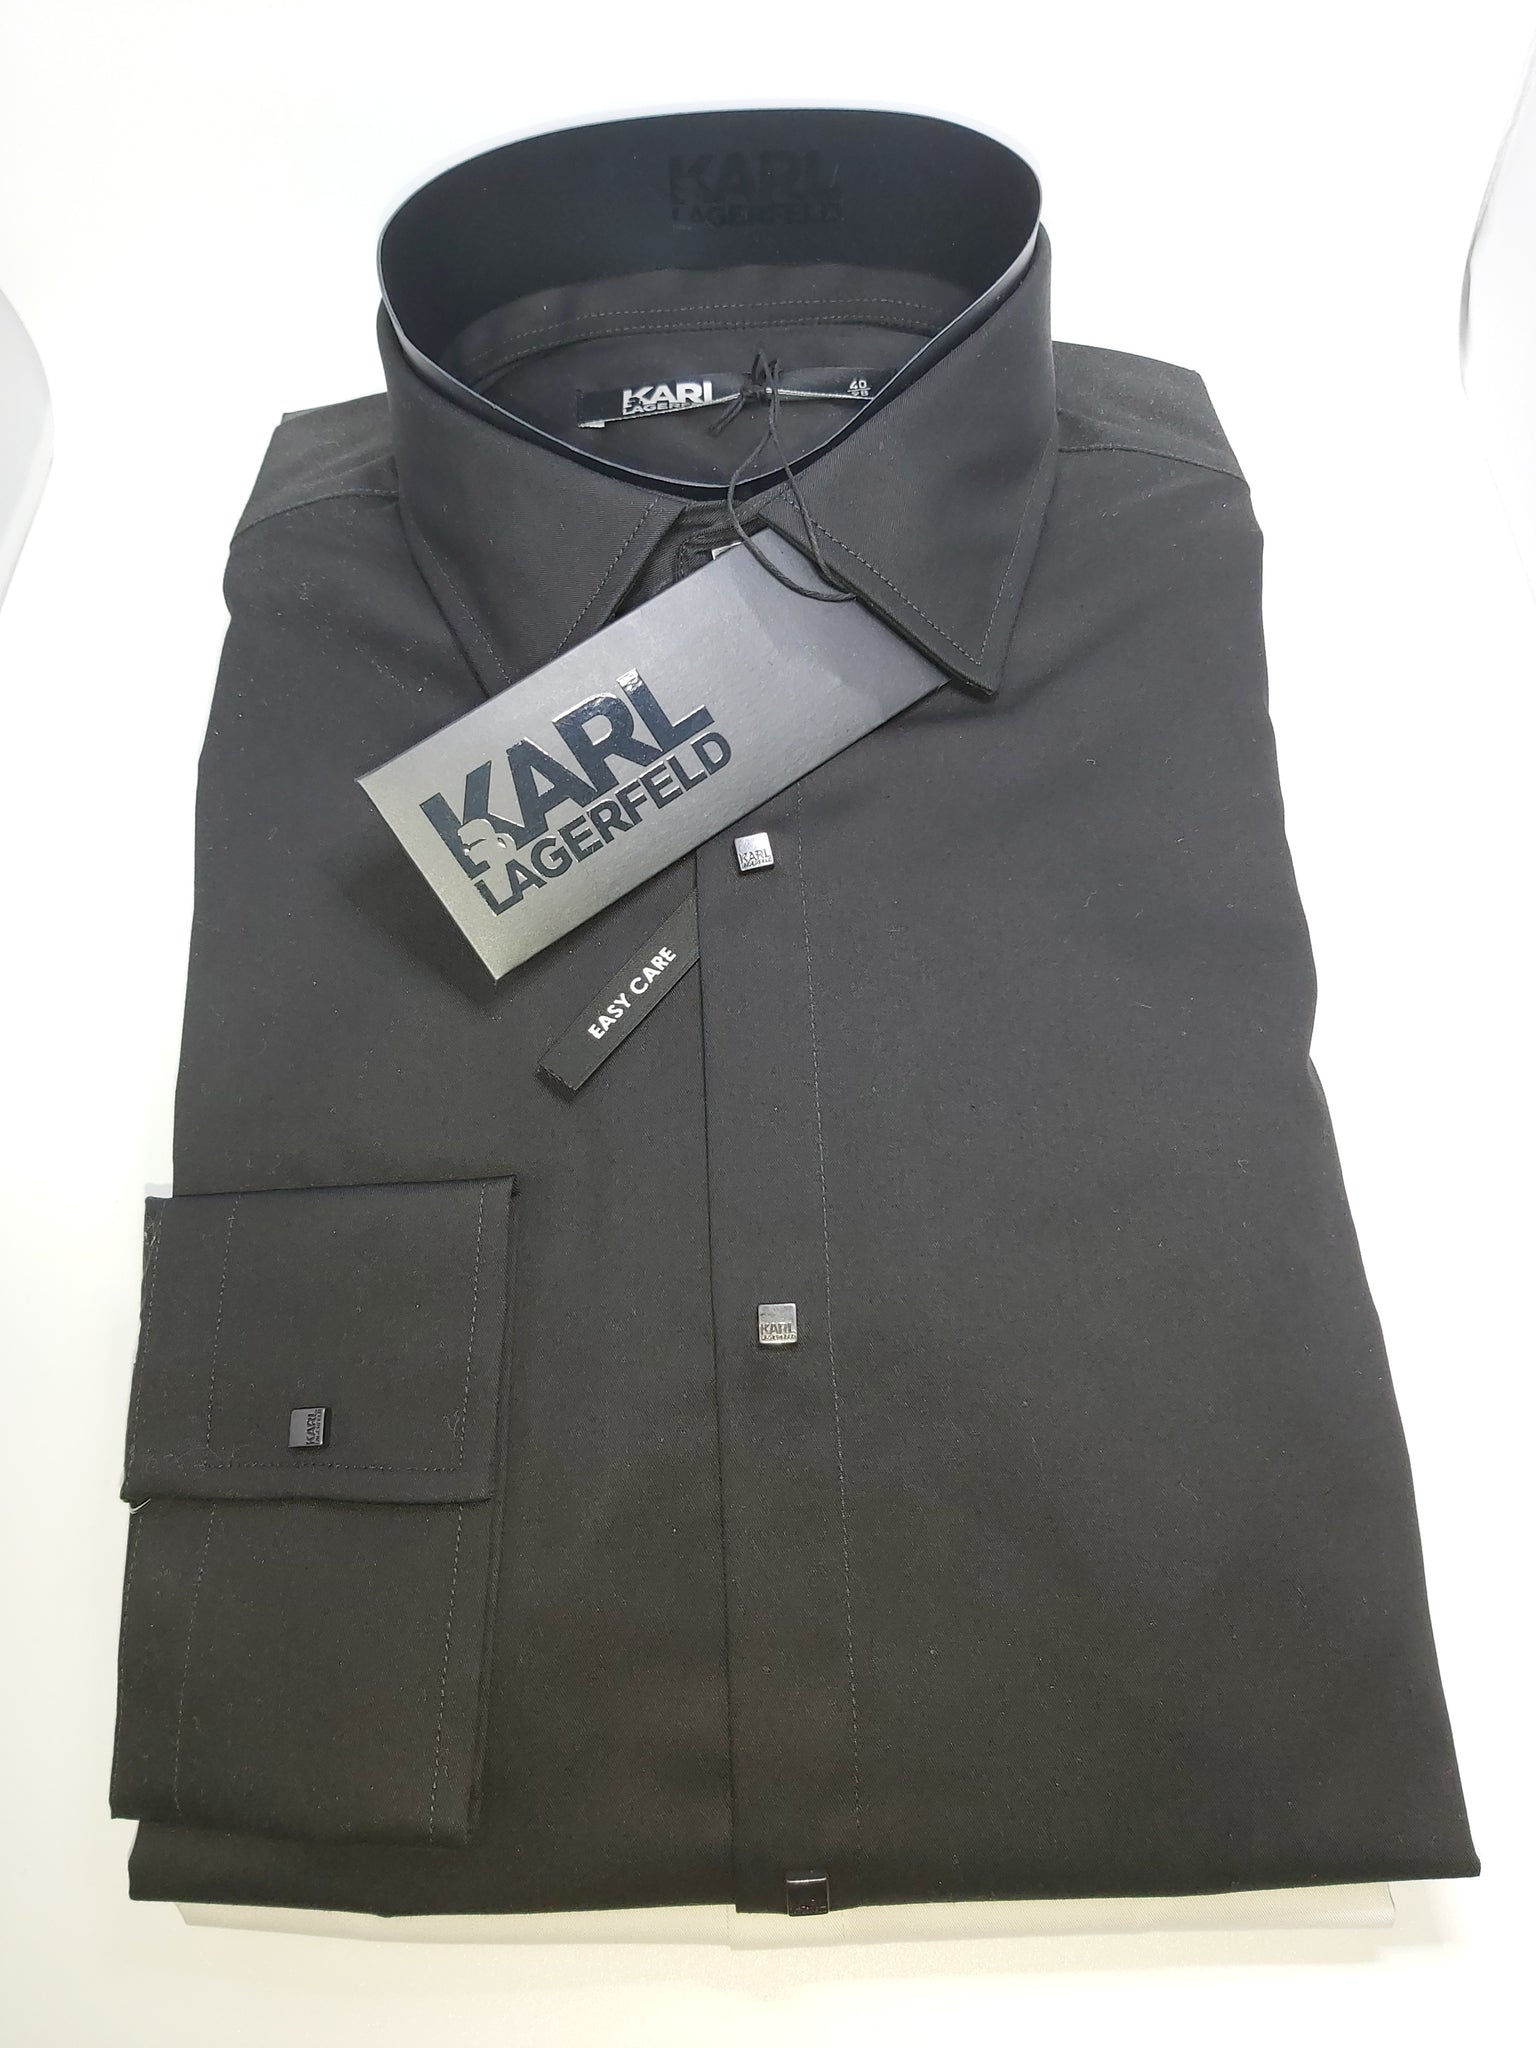 Slim Fit Lagerfeld Hemd mit schwarzen Druckknöpfen Farbe Iv – Wolfram S Männermode